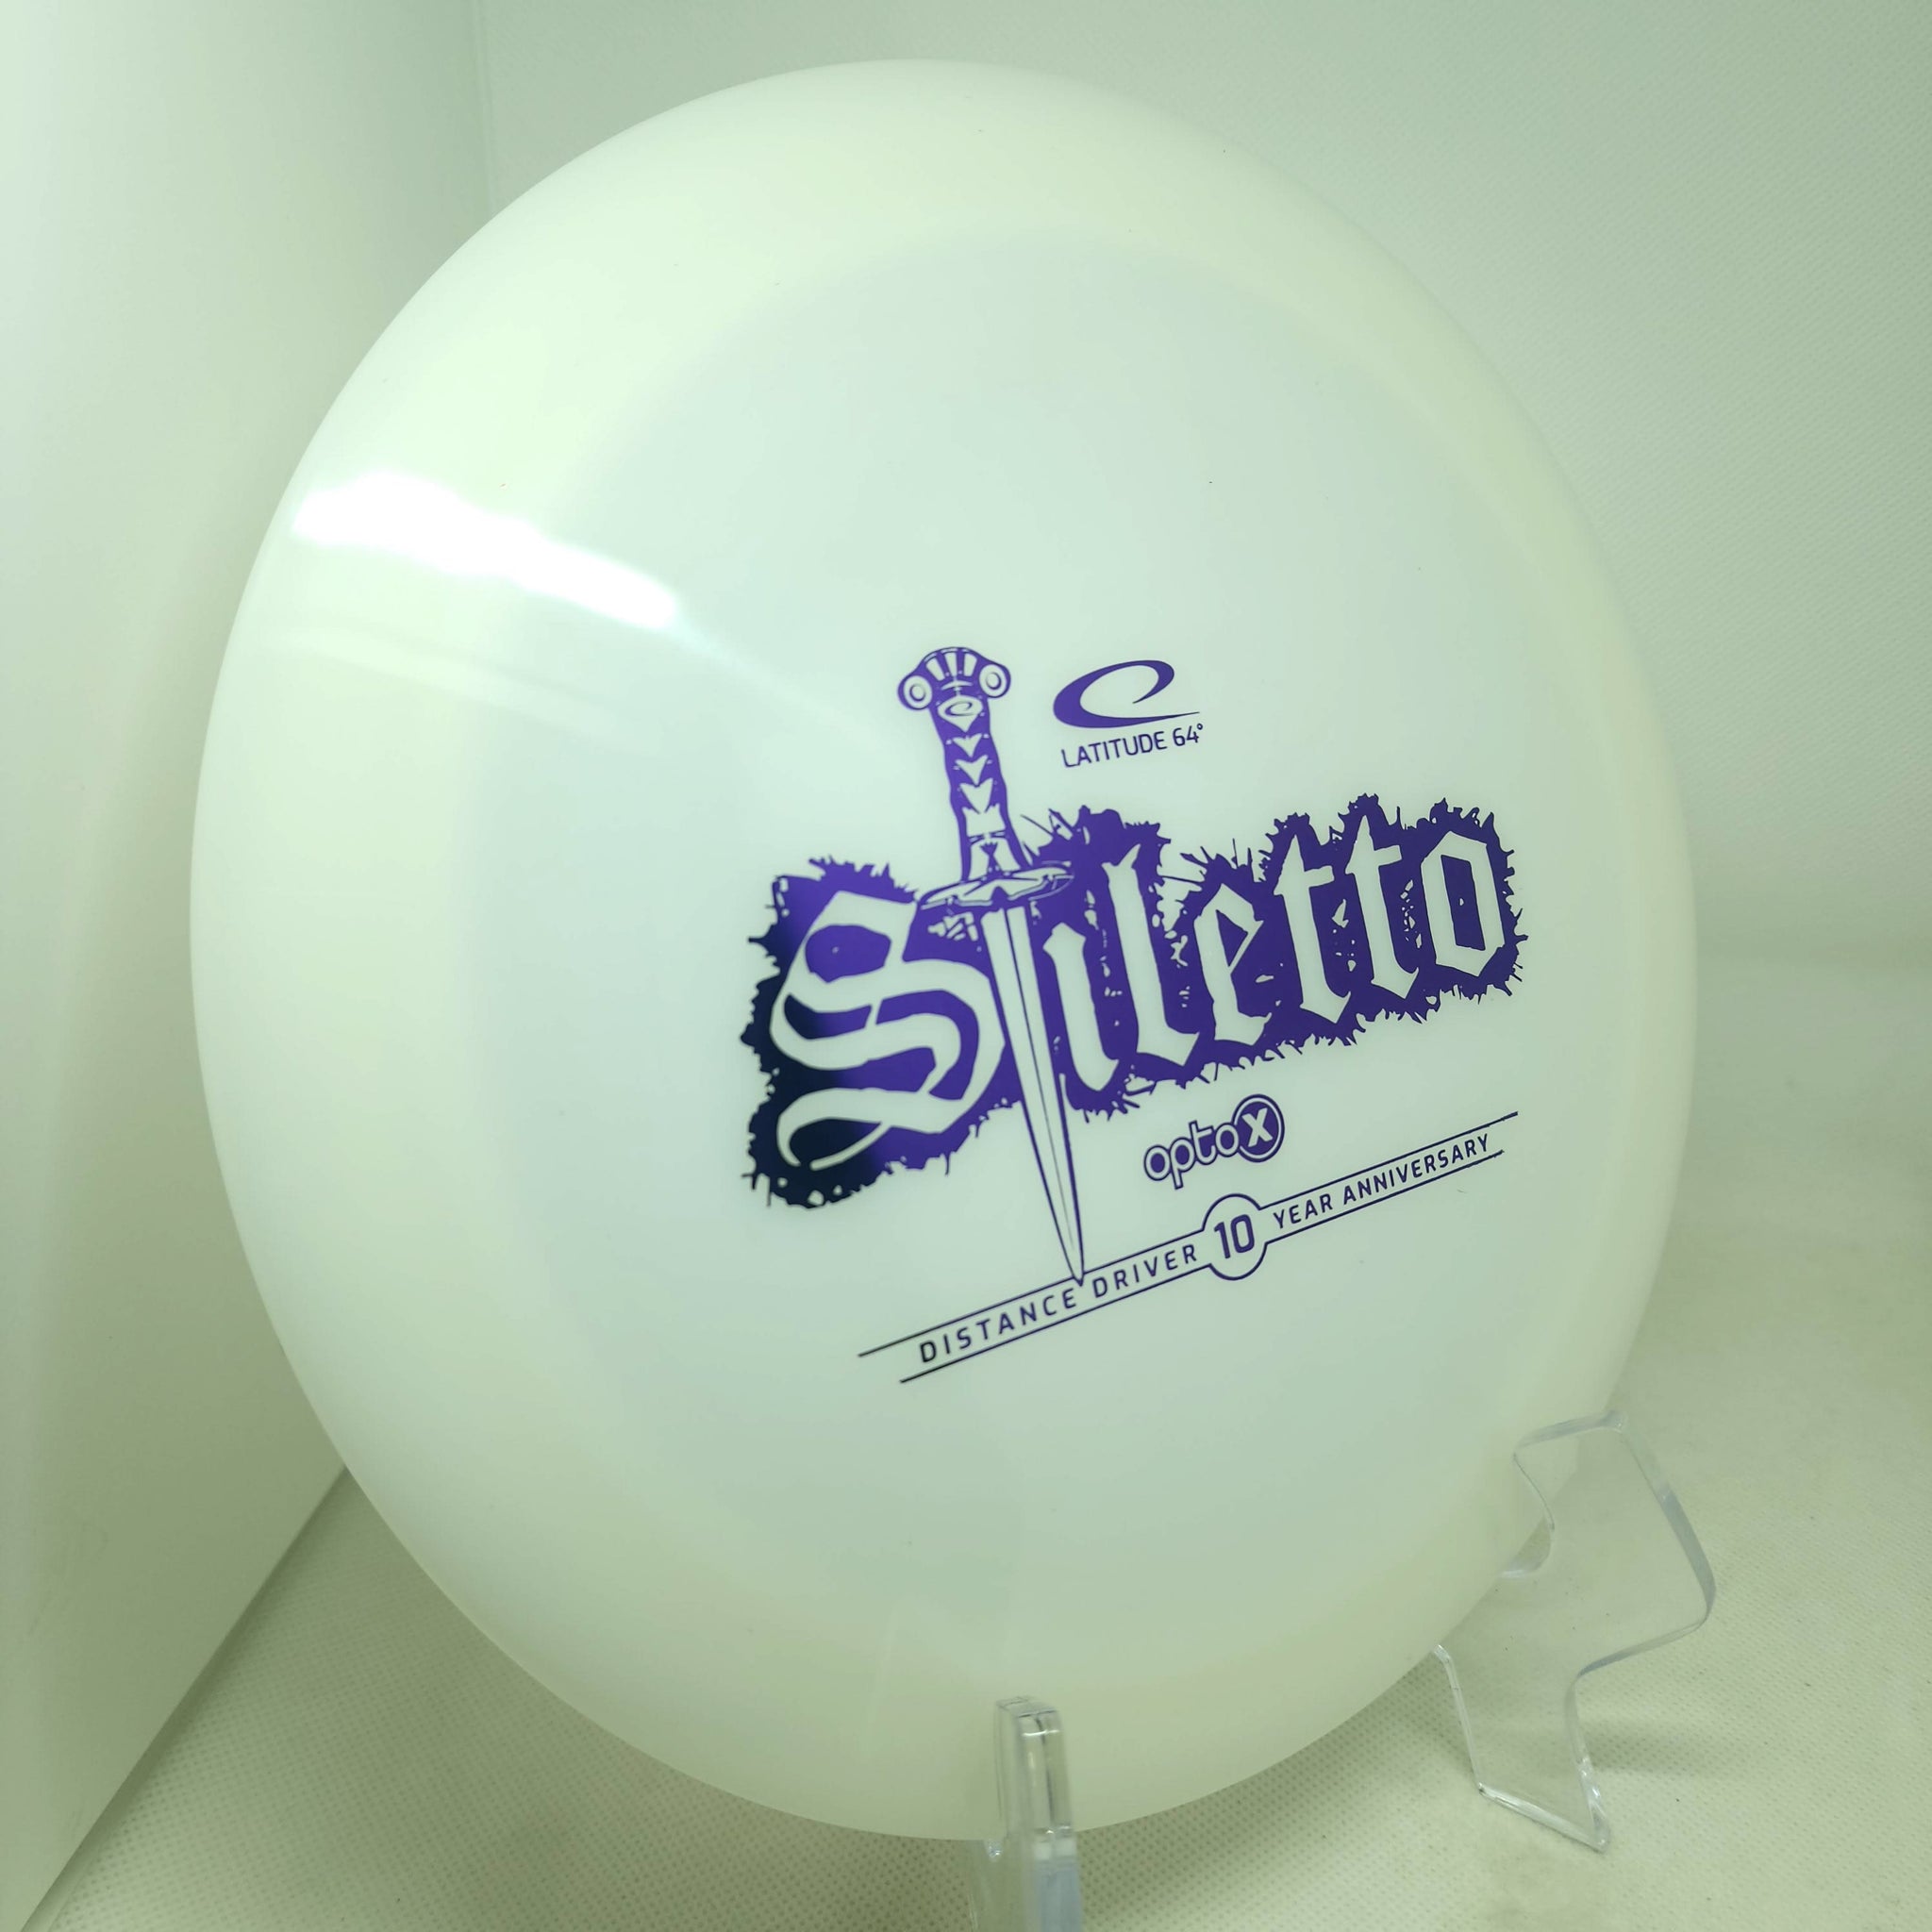 Stiletto (Opto X) 10 Year Anniversary